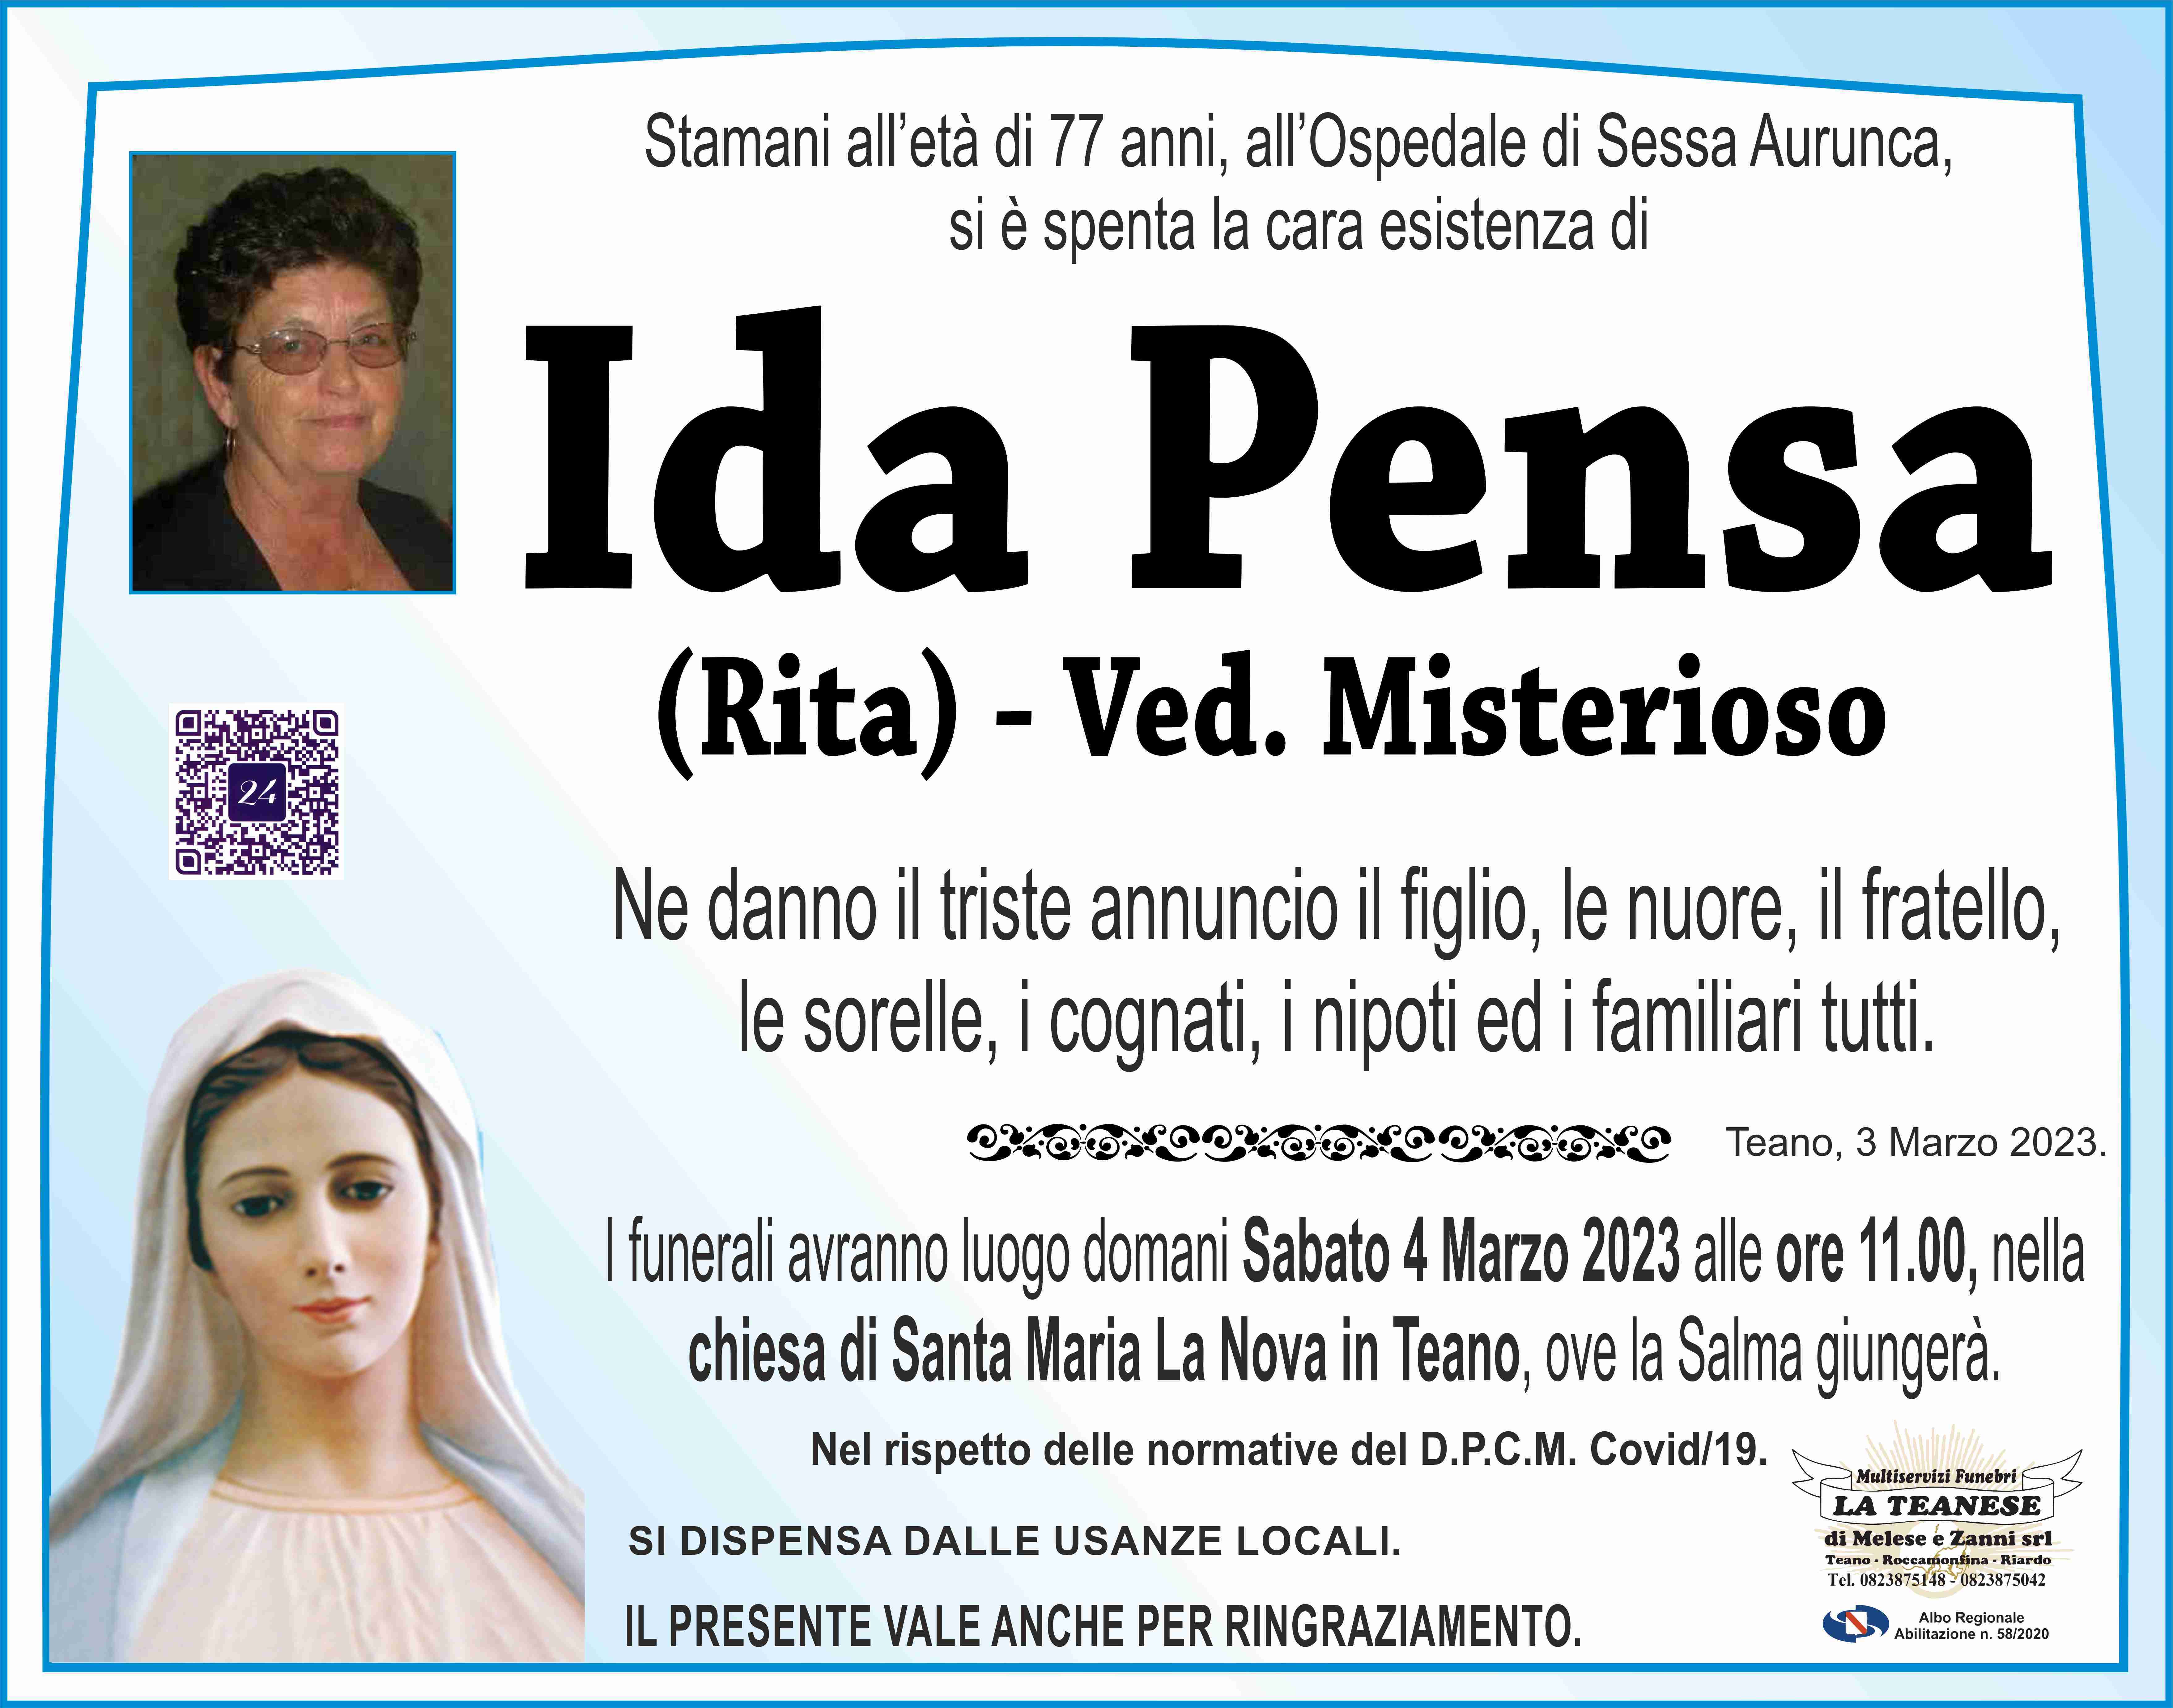 Ida Pensa (Rita)